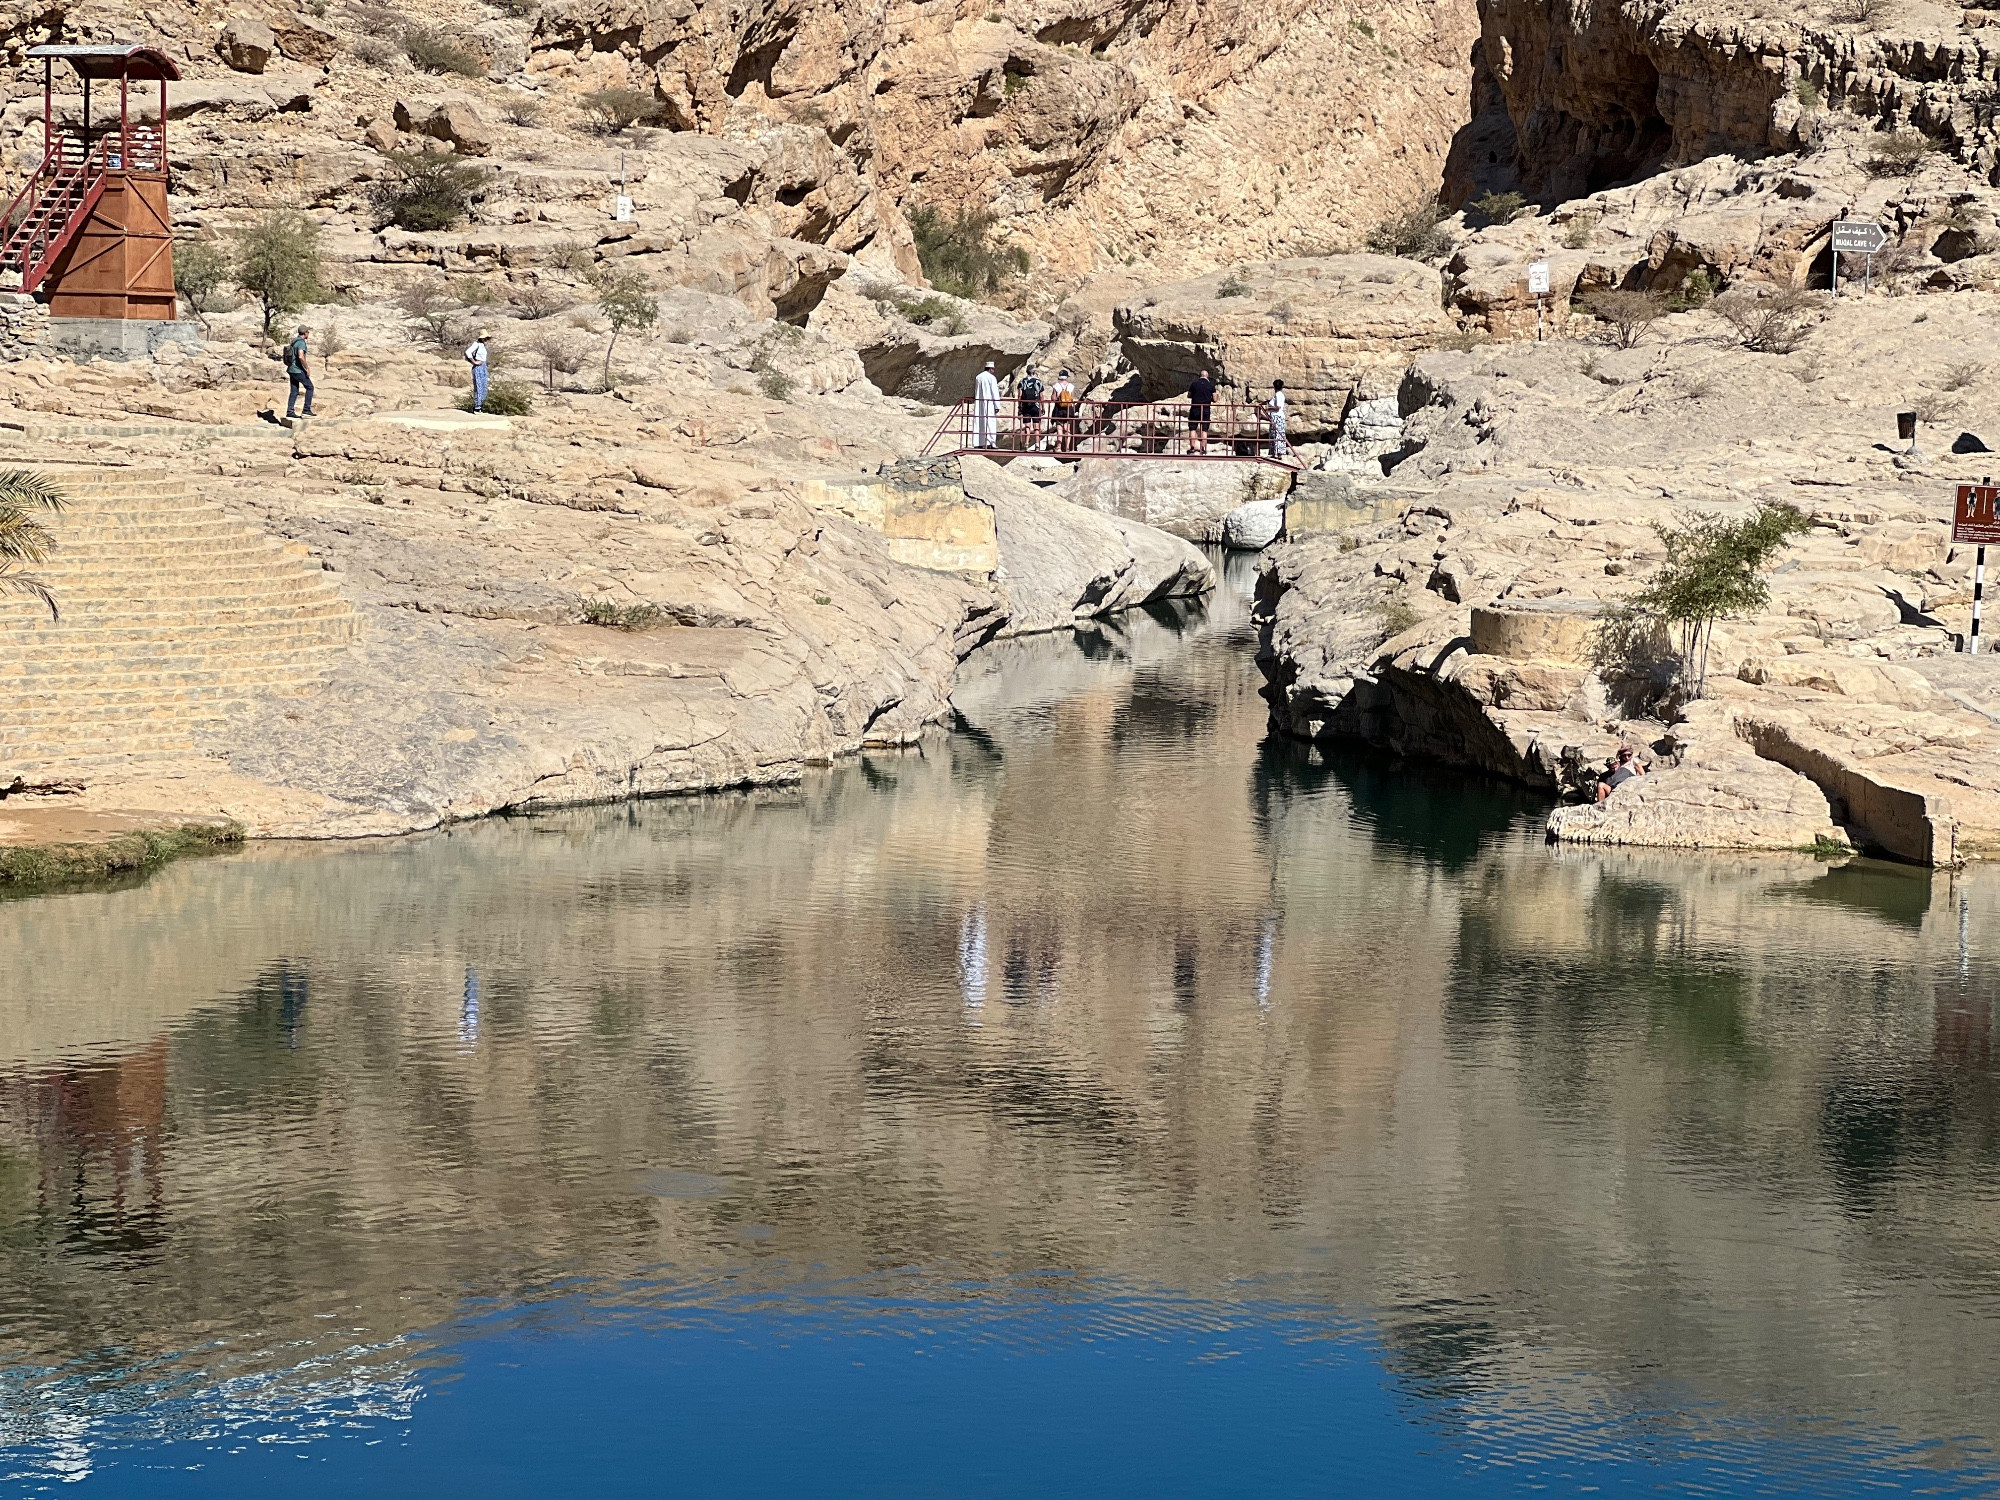 Wadi Bani Khalid, Oman